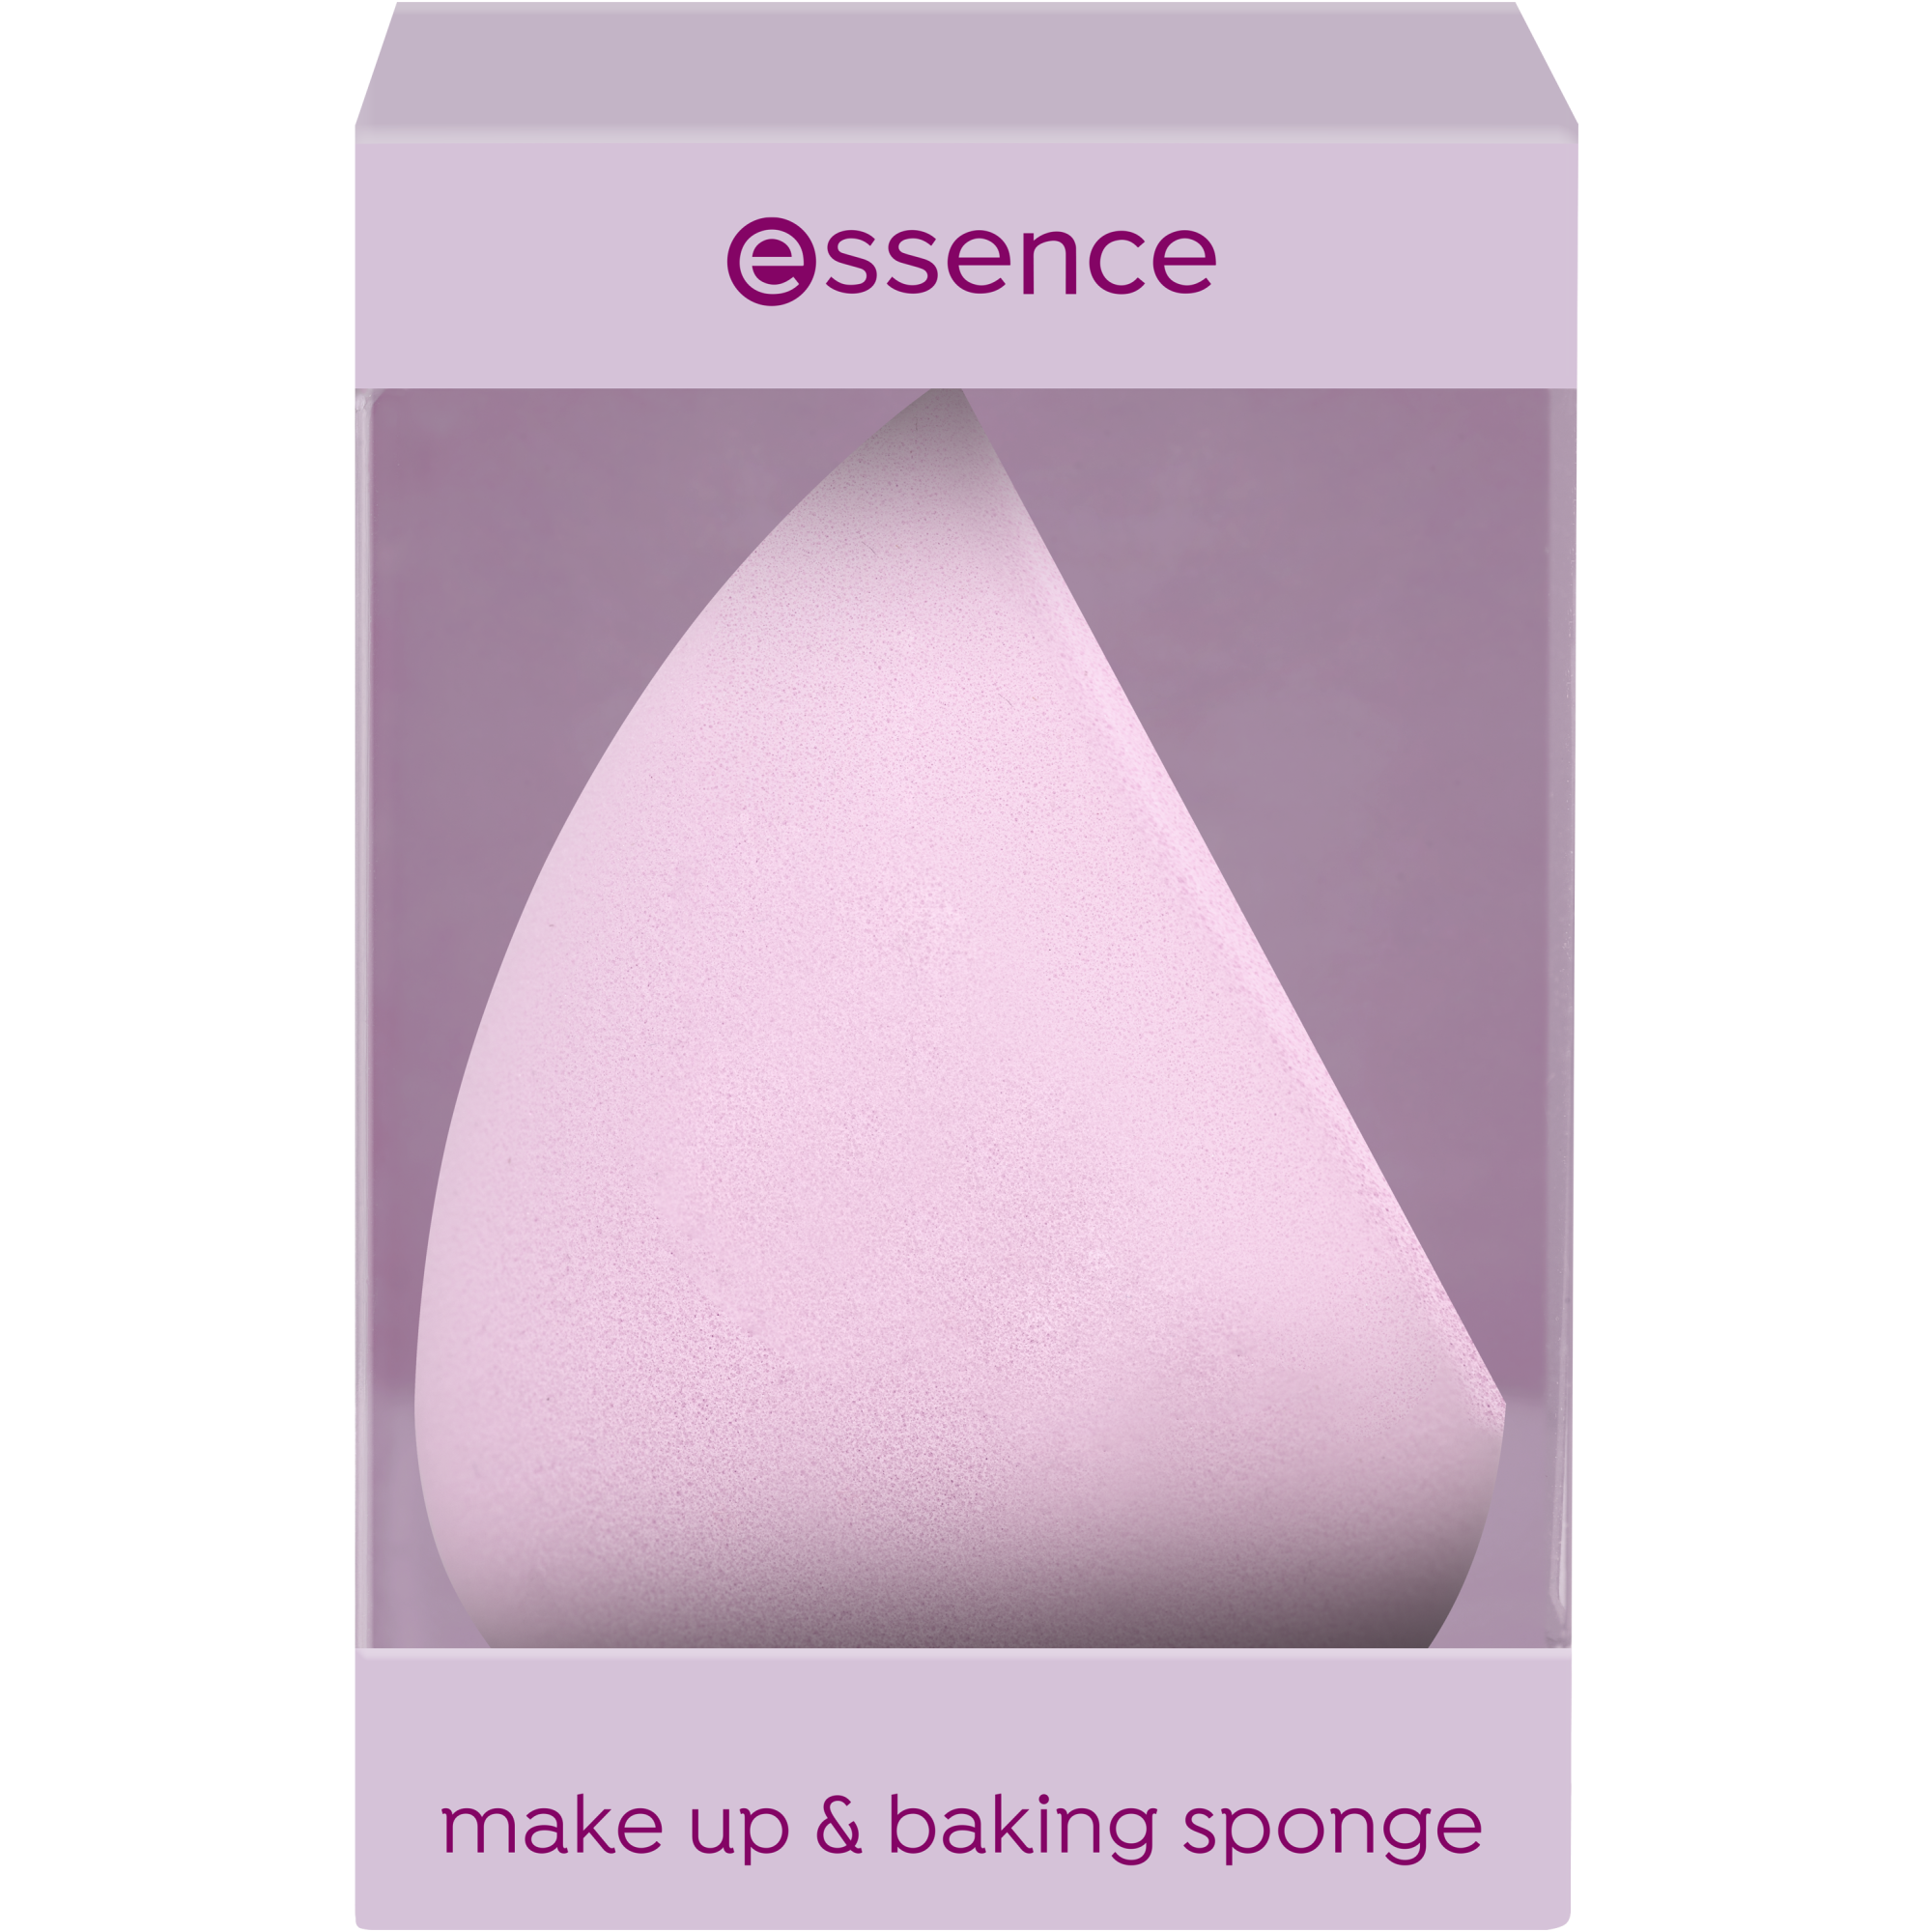 Makeup & baking sponge éponge